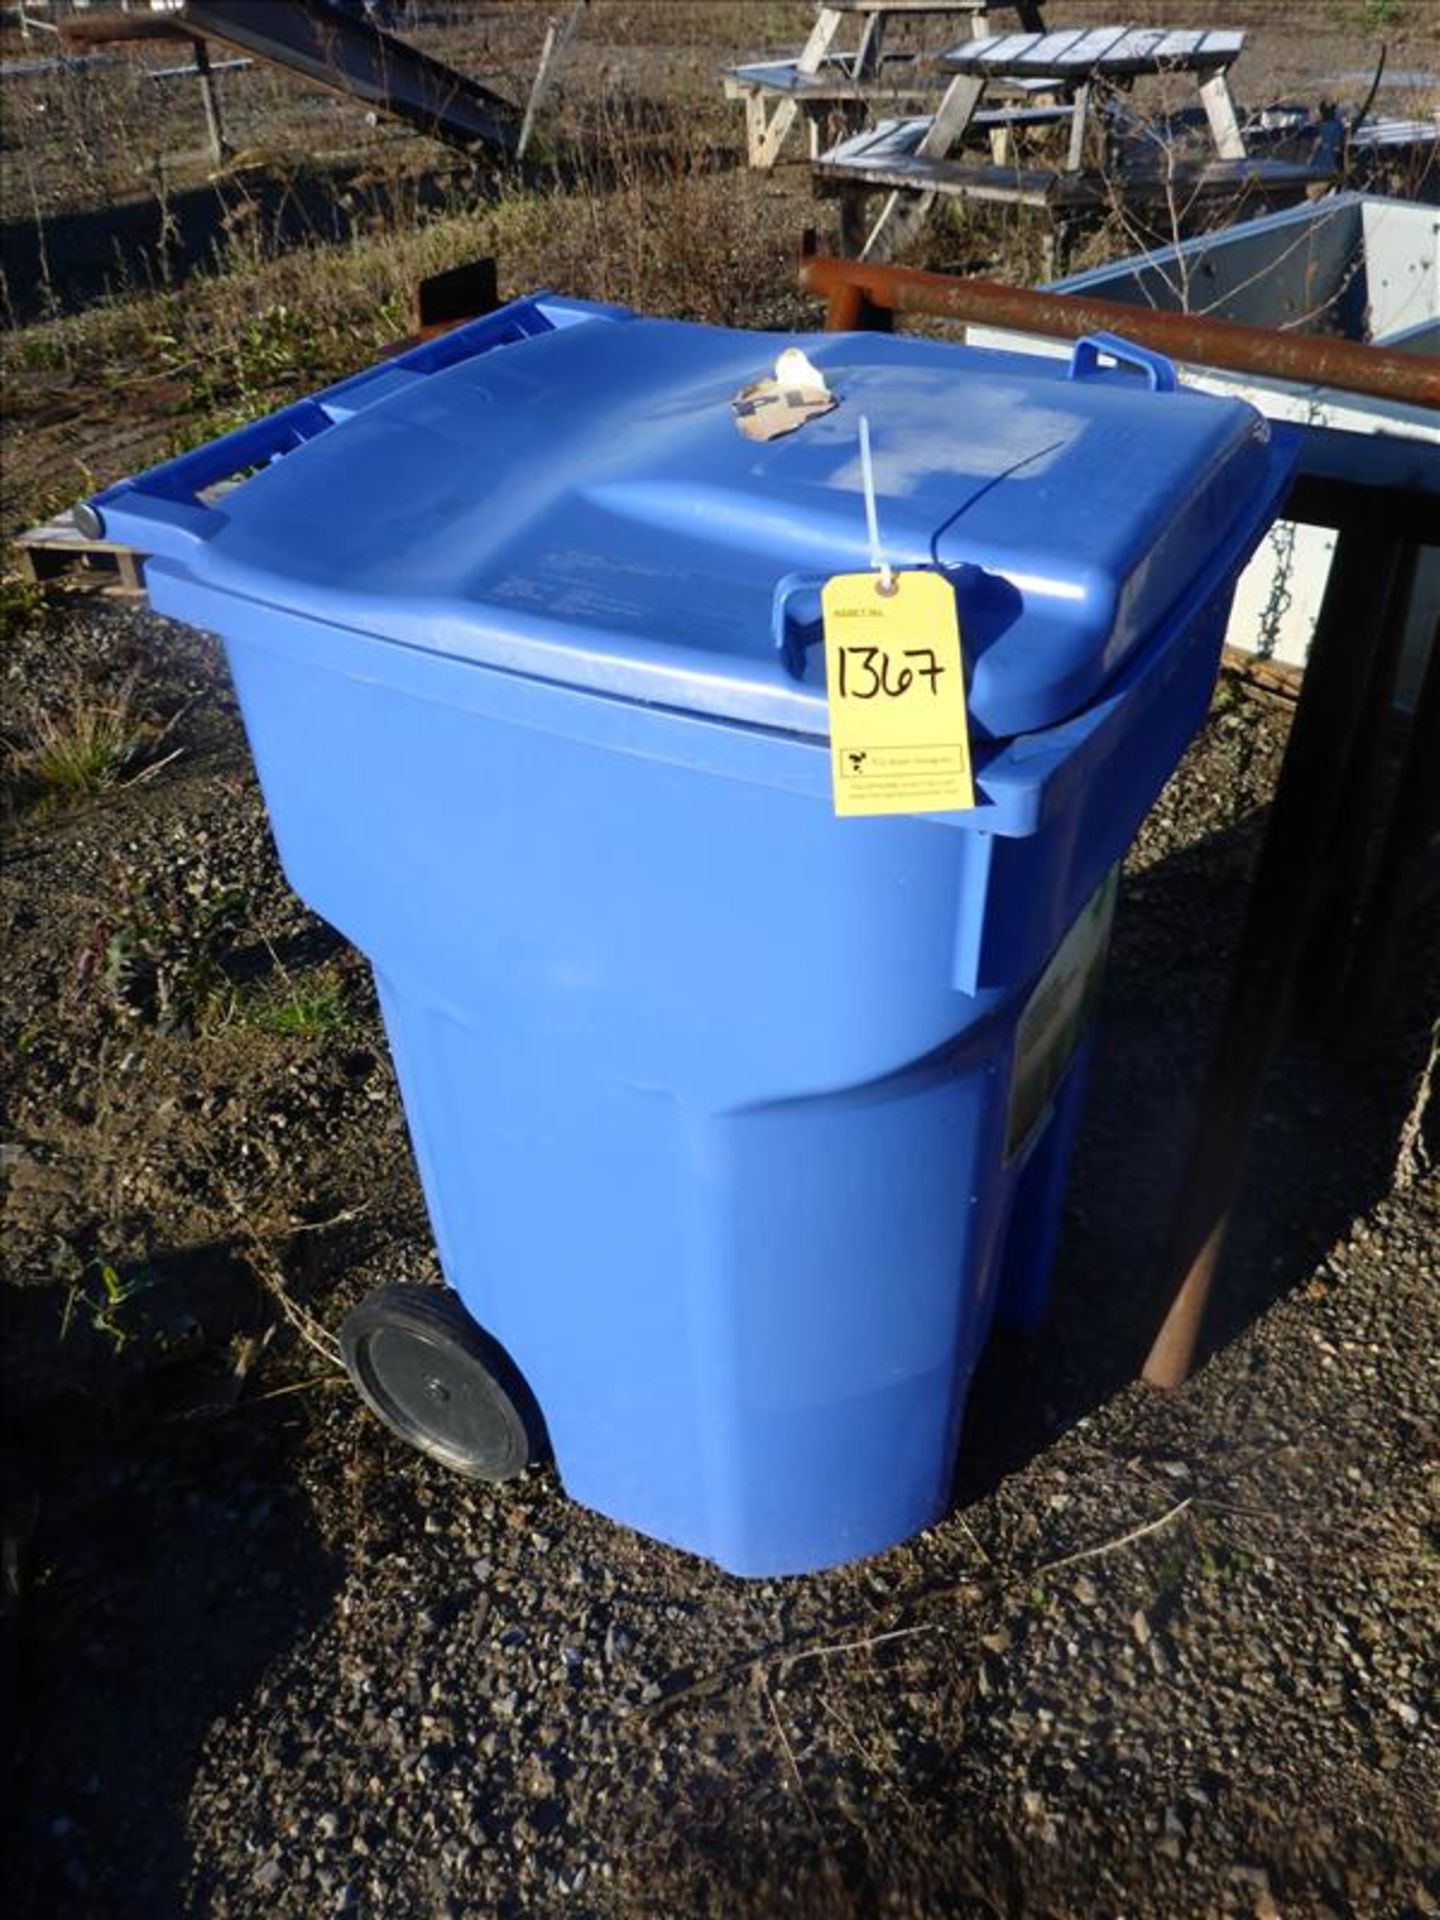 (2) plastic trash bins on wheels (Tag No. 1367)